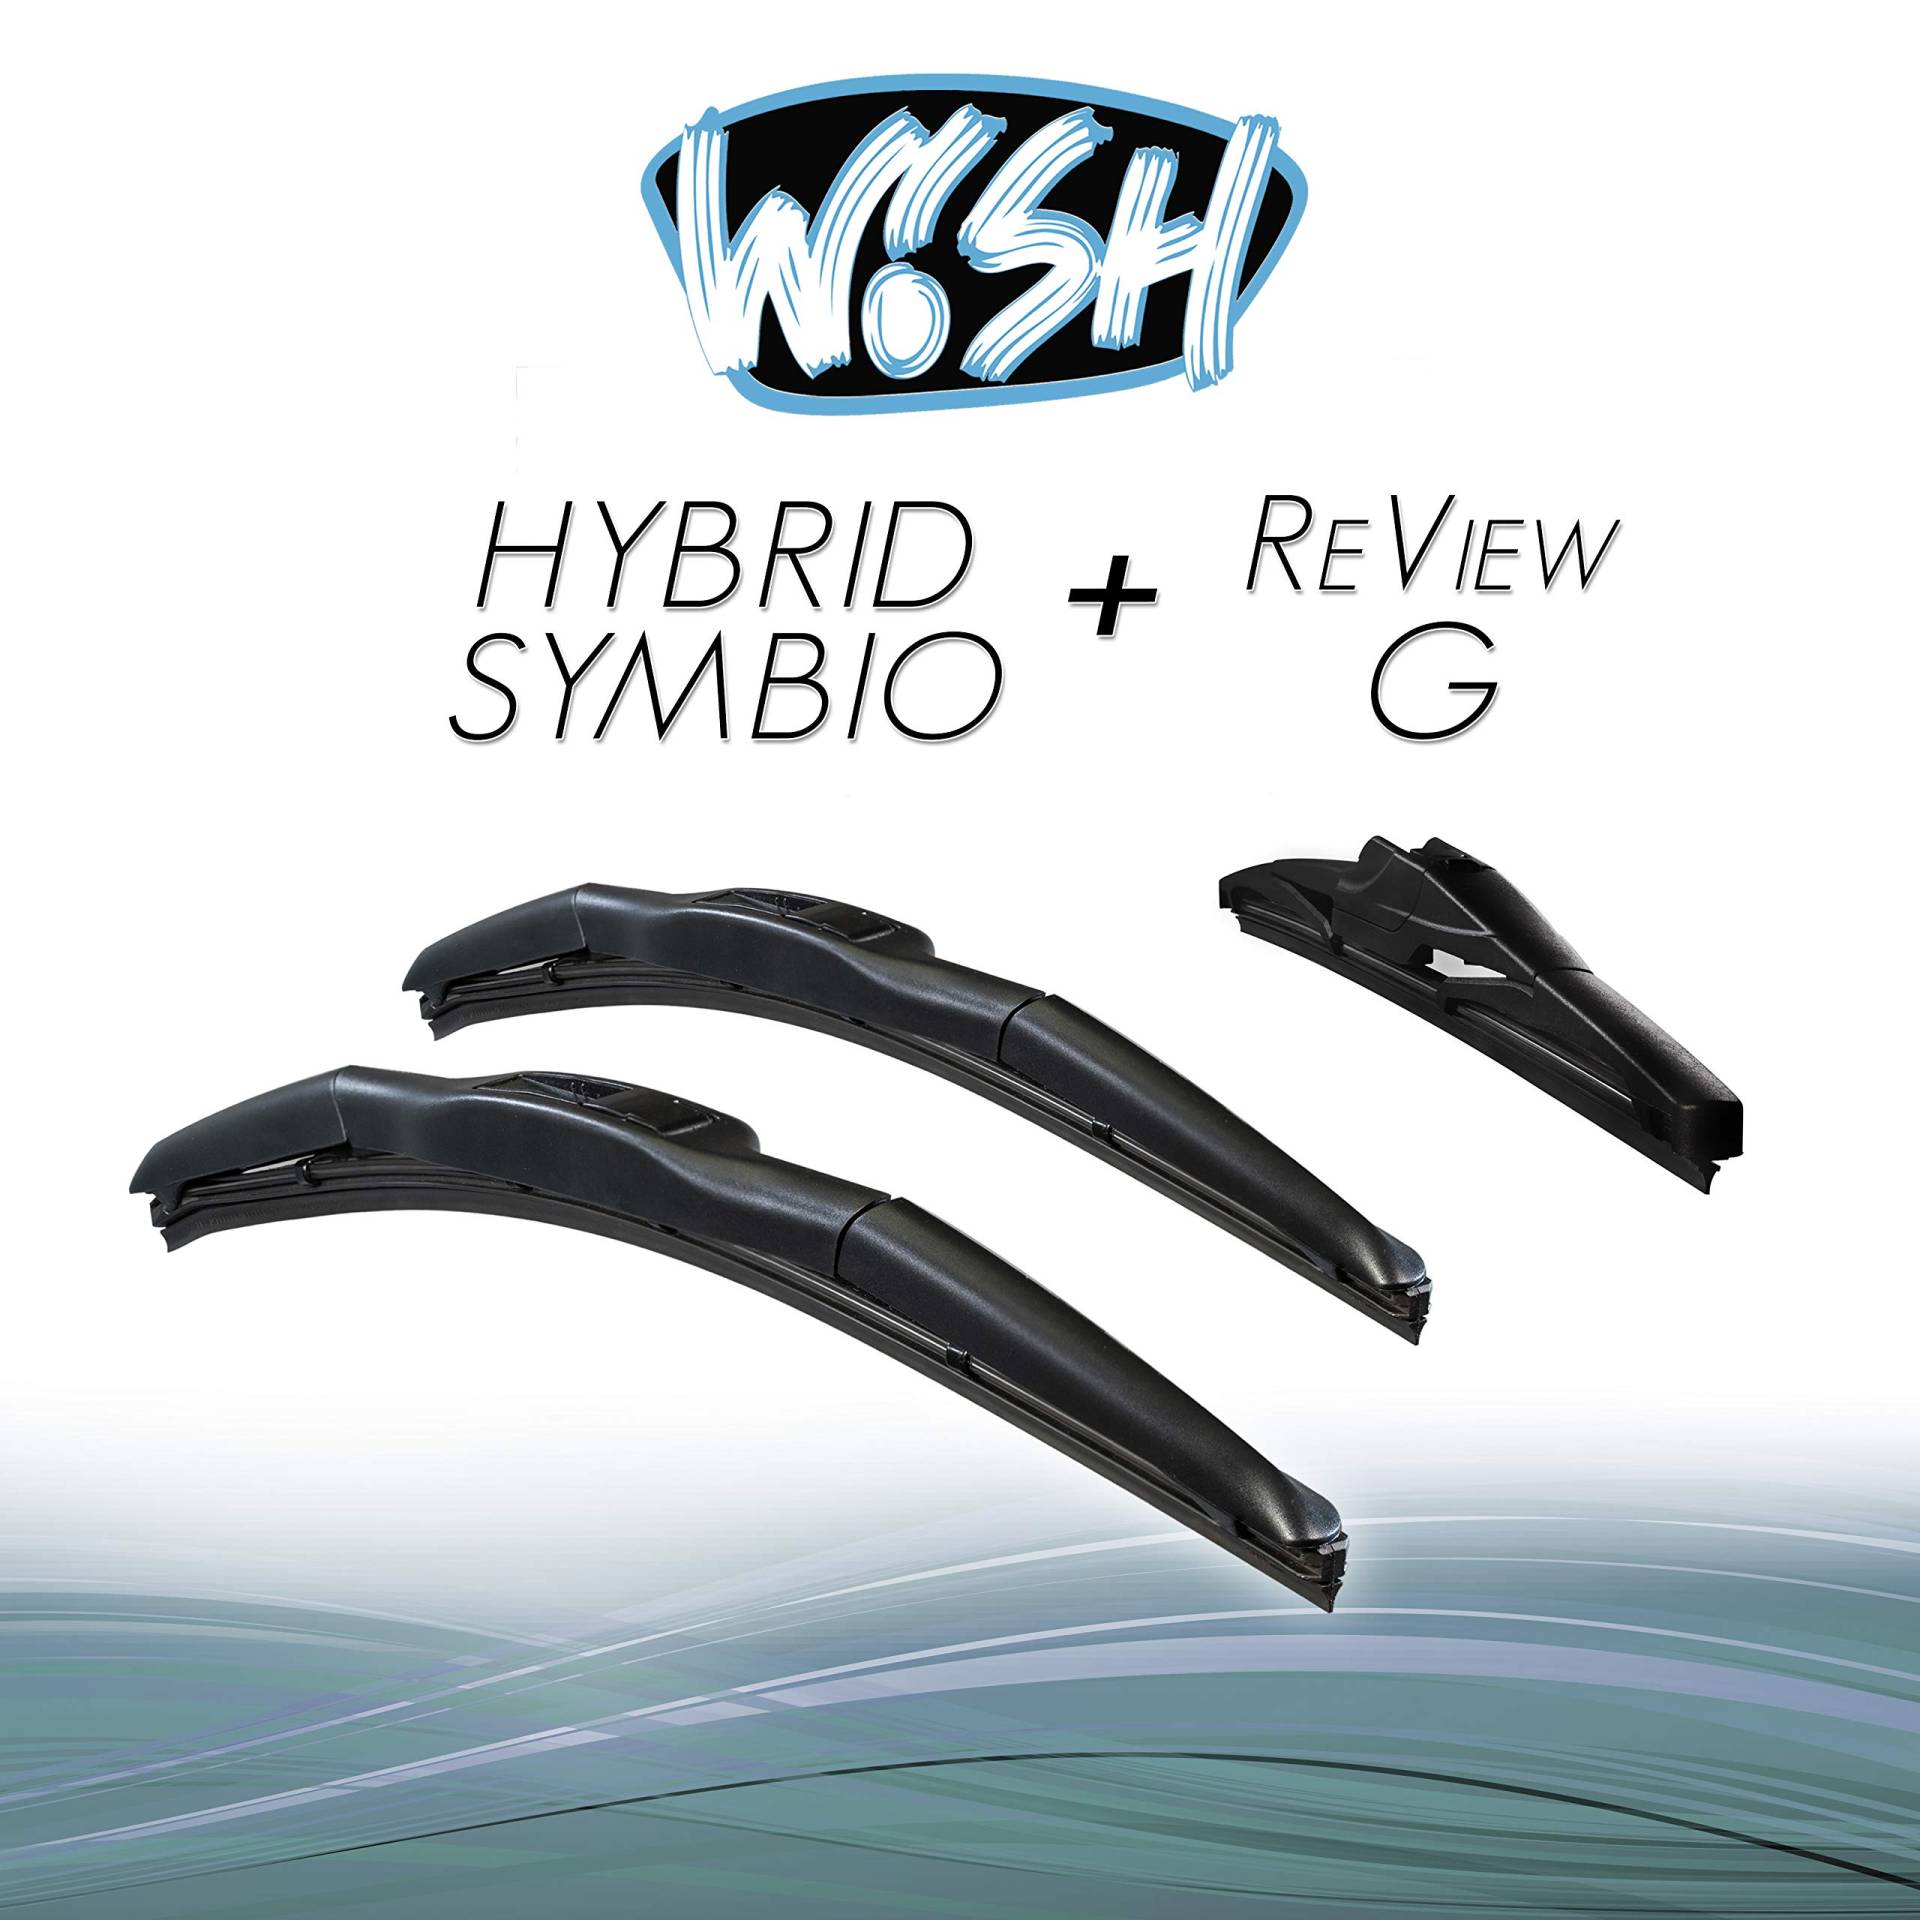 Wish® Hybrid Symbio Satz Front + Heck Scheibenwischer Länge: 24" 600mm / 16" 400mm / 12" 300mm Wischblätter Vorne und Hinten Hybrid-Scheibenwischer + Review G HS24.16.RG12 von Wish